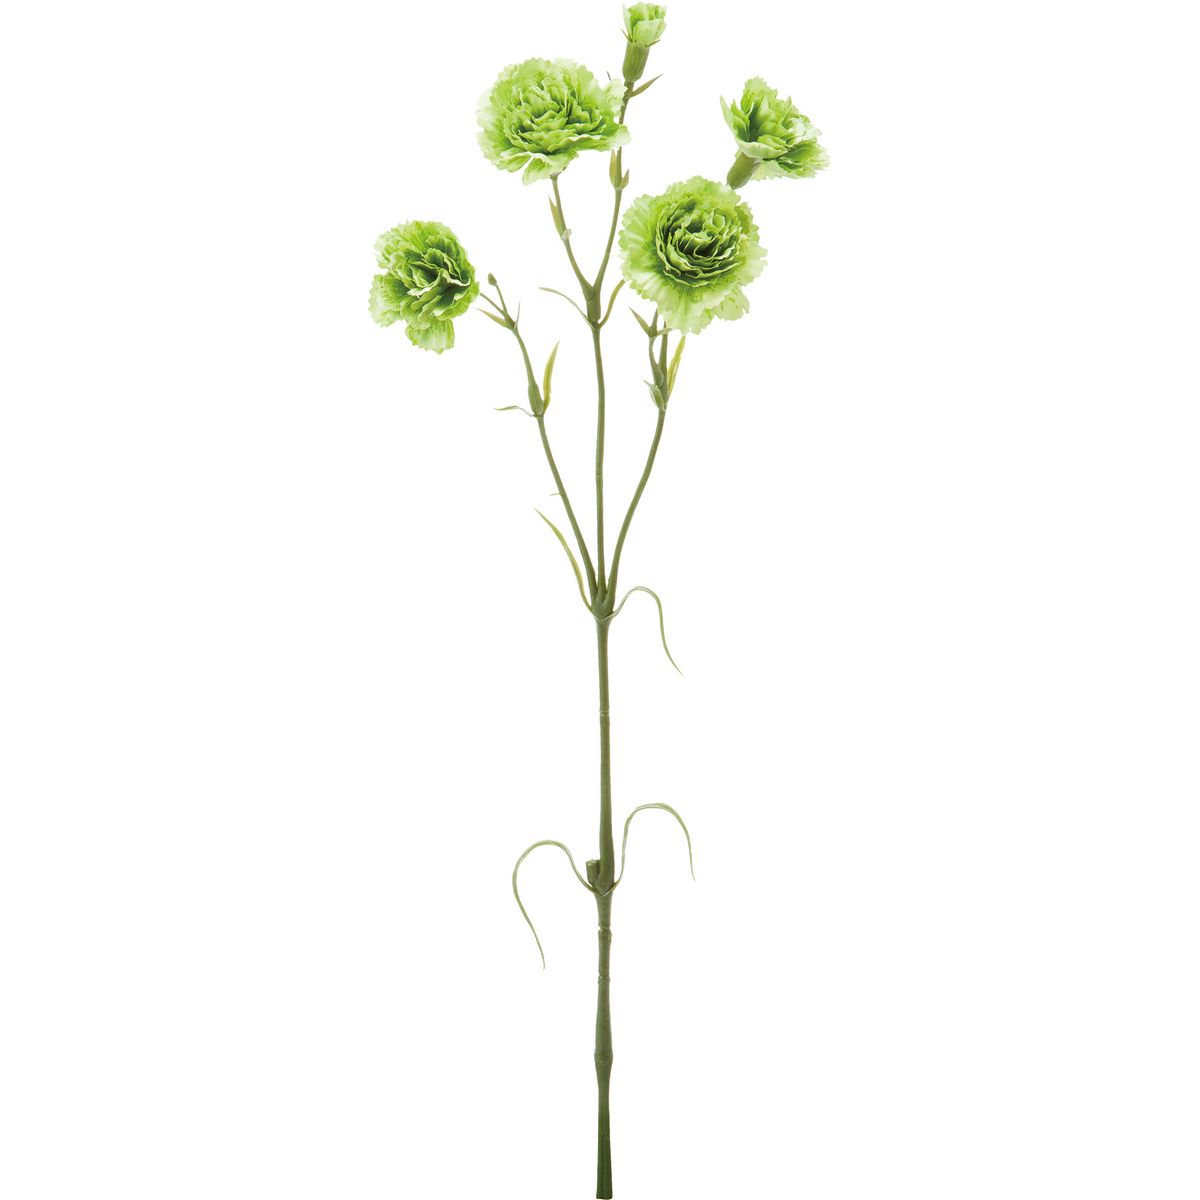 【造花】YDM/カーネーションスプレー グリーン/FA-7264-GR【01】【取寄】 造花（アーティフィシャルフラワー） 造花 花材「か行」 カーネーション